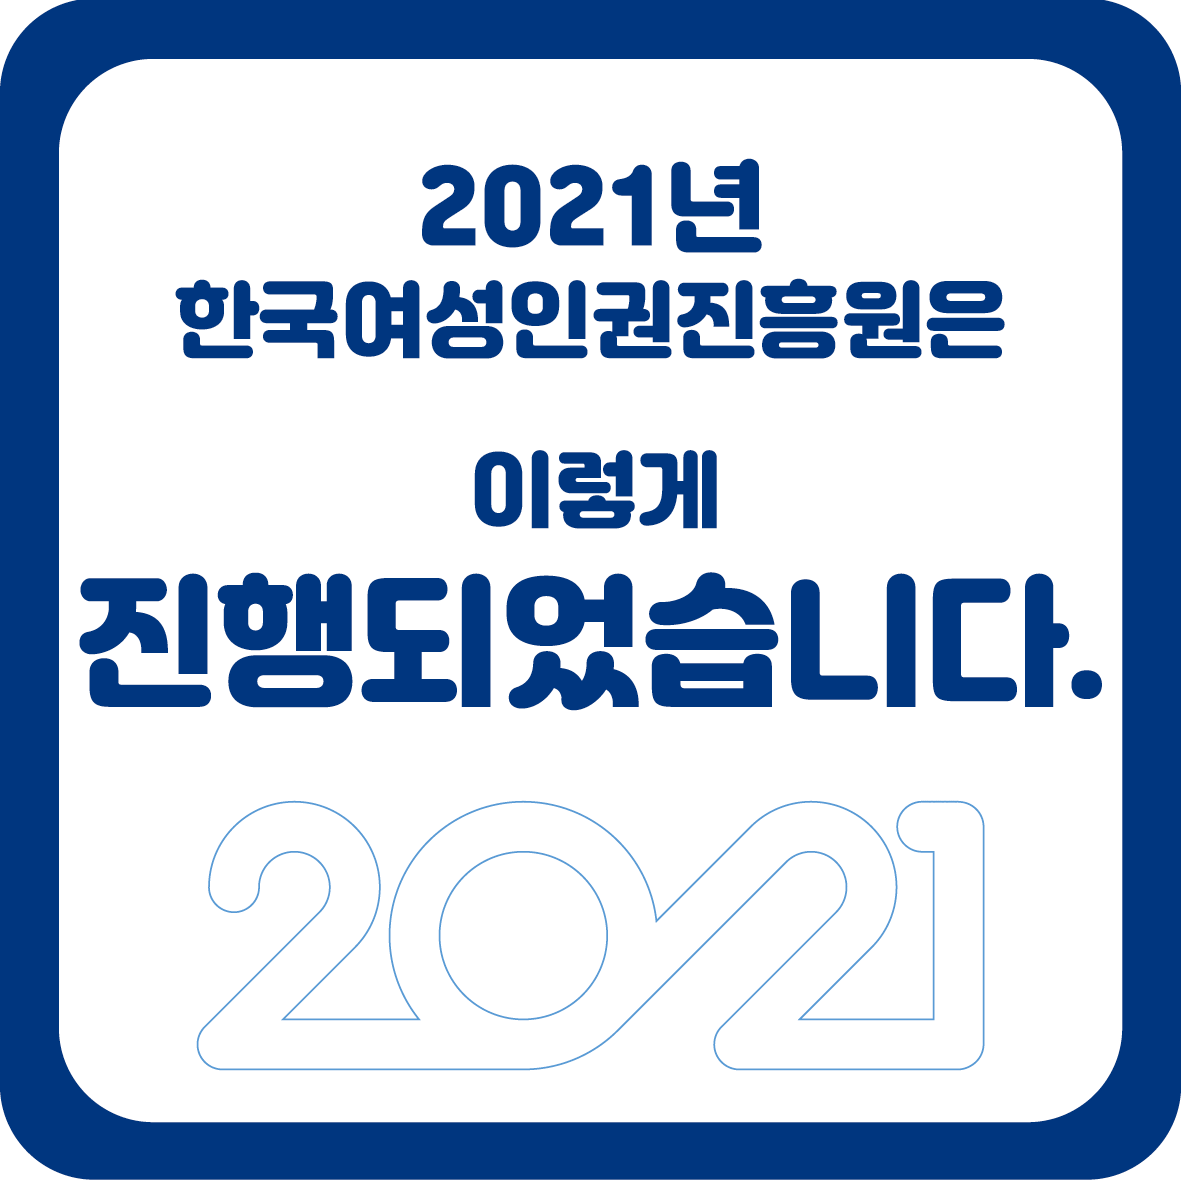 2장 2021년 한국여성인권진흥원은 이렇게 진행되었습니다. 2021